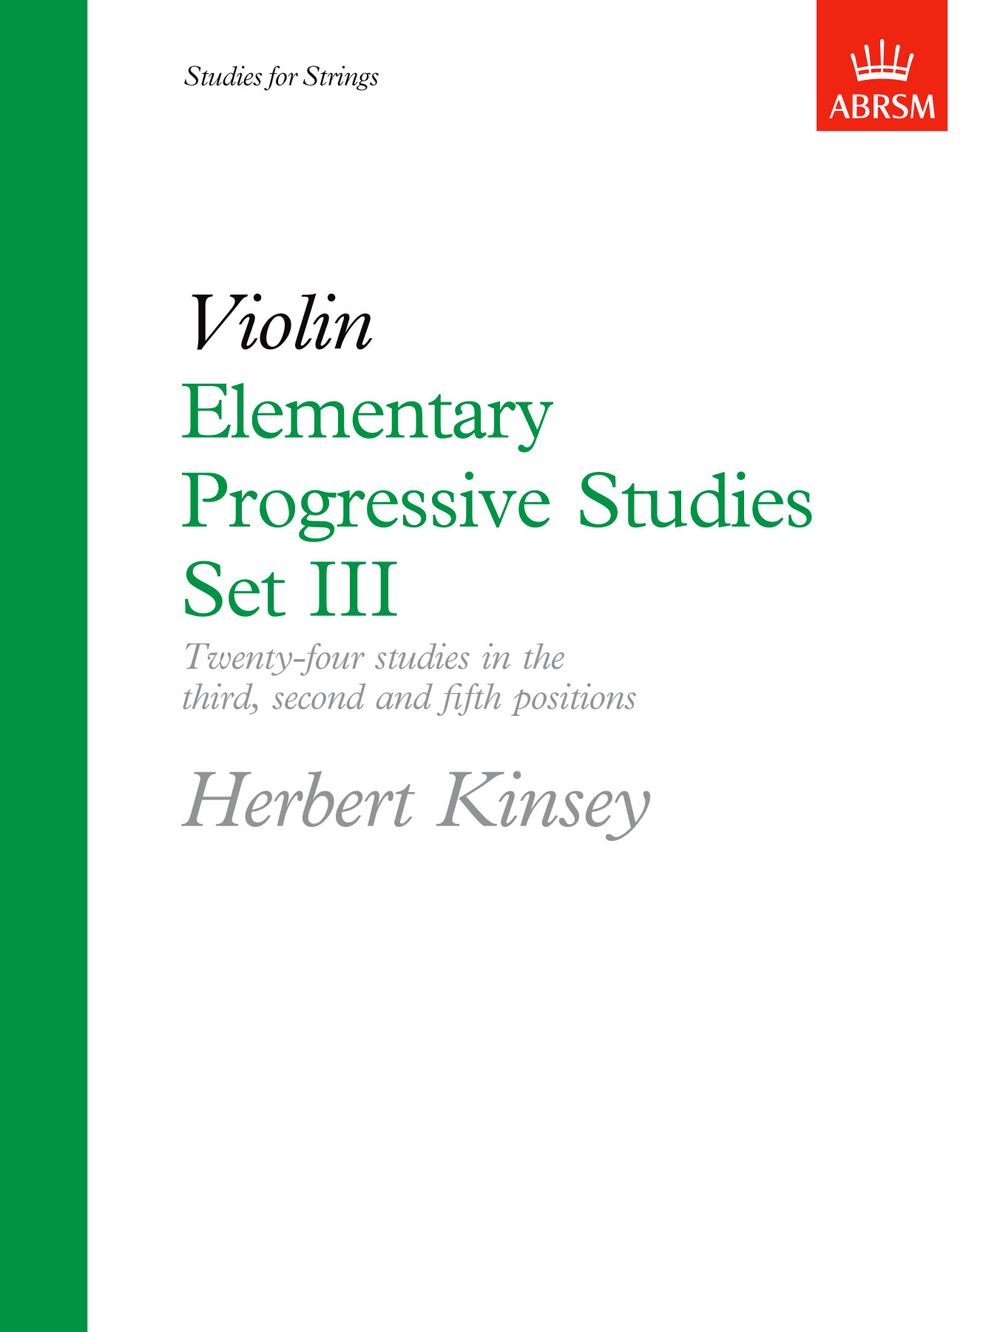 Herbert Kinsey: Elementary Progressive Studies  Set III: Violin: Study